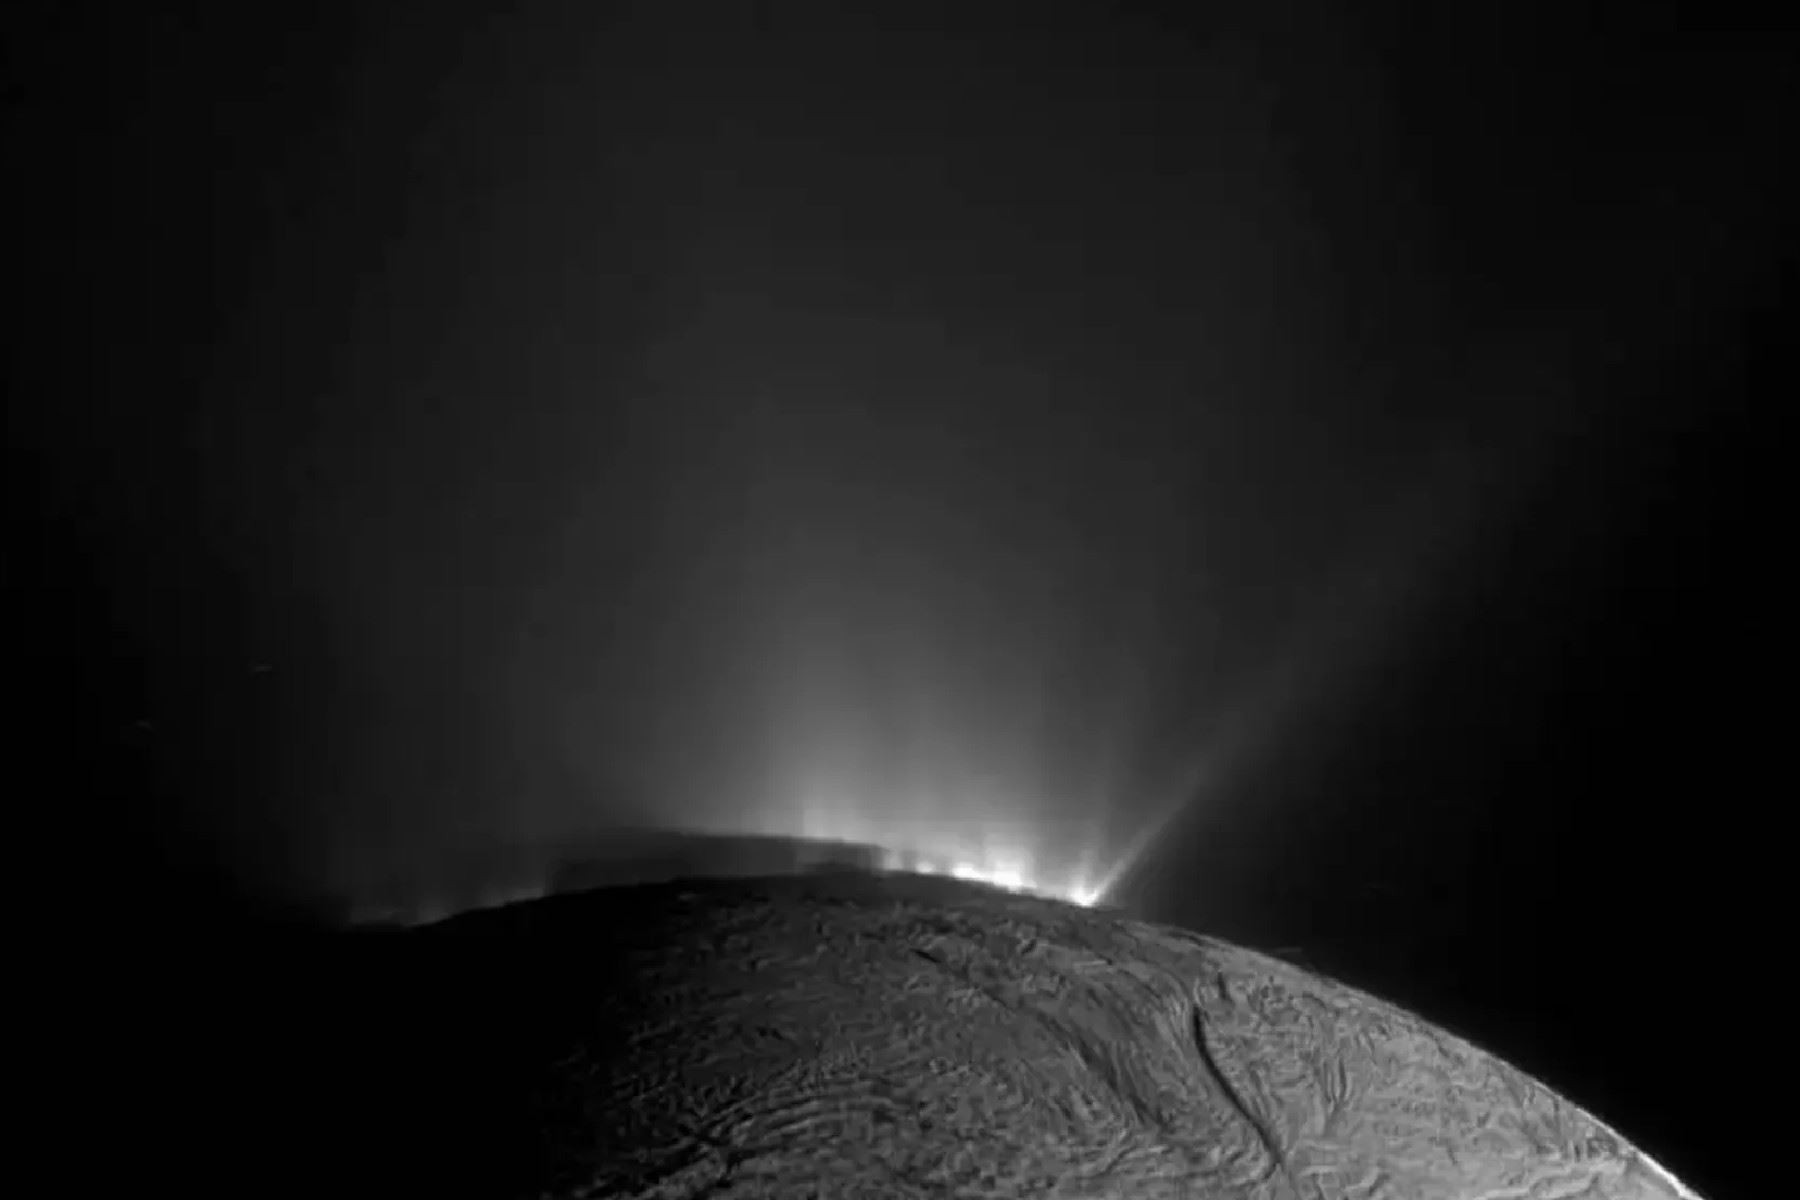 La nave espacial Cassini de la NASA captó esta imagen de Encélado el 30 de noviembre de 2010. La sombra de Encélado sobre las partes inferiores de los géiseres es claramente visible.
NASA/JPL-Caltech/Instituto de Ciencia Espacial